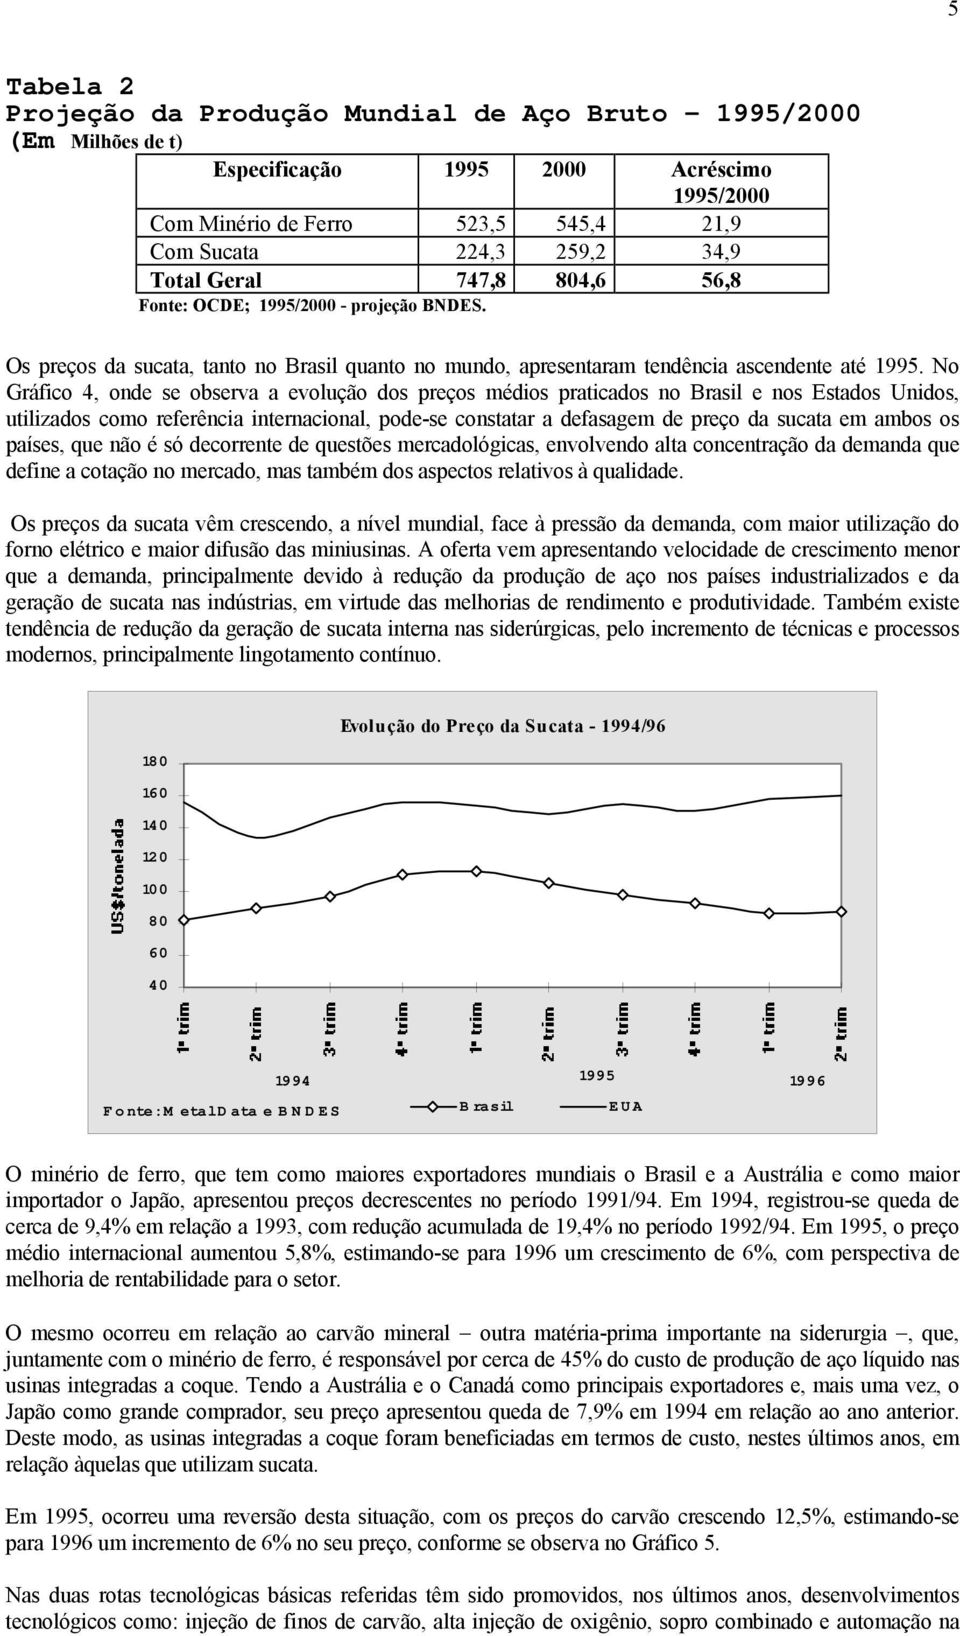 No Gráfico 4, onde se observa a evolução dos preços médios praticados no Brasil e nos Estados Unidos, utilizados como referência internacional, pode-se constatar a defasagem de preço da sucata em